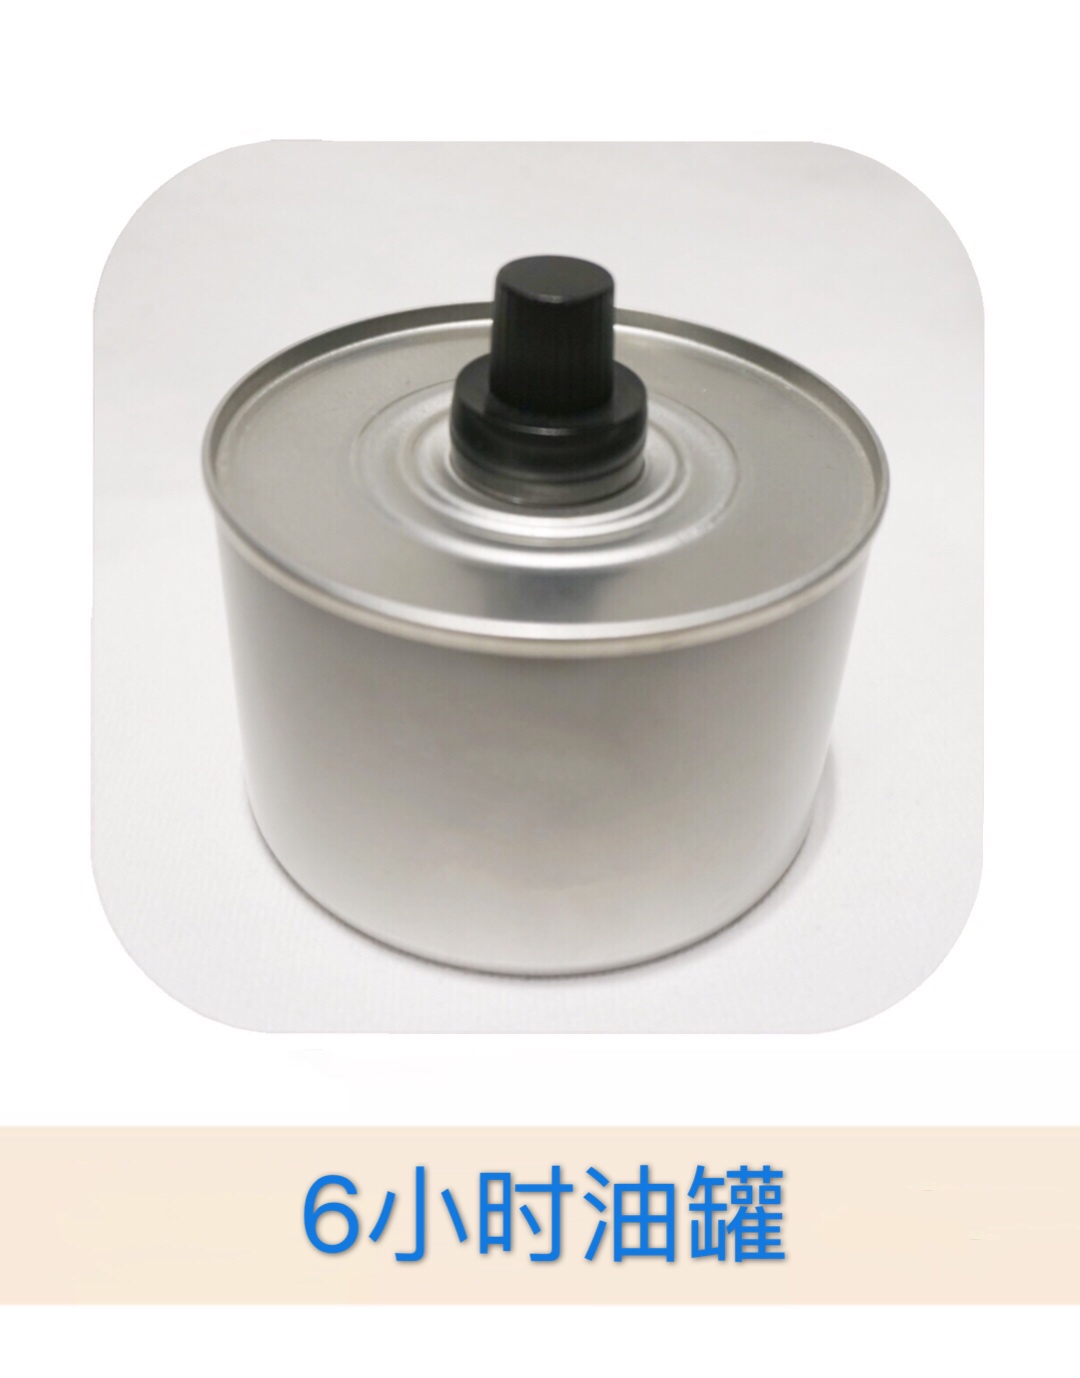 马口铁制品 环保油罐 可定制 固体 液体酒精罐5